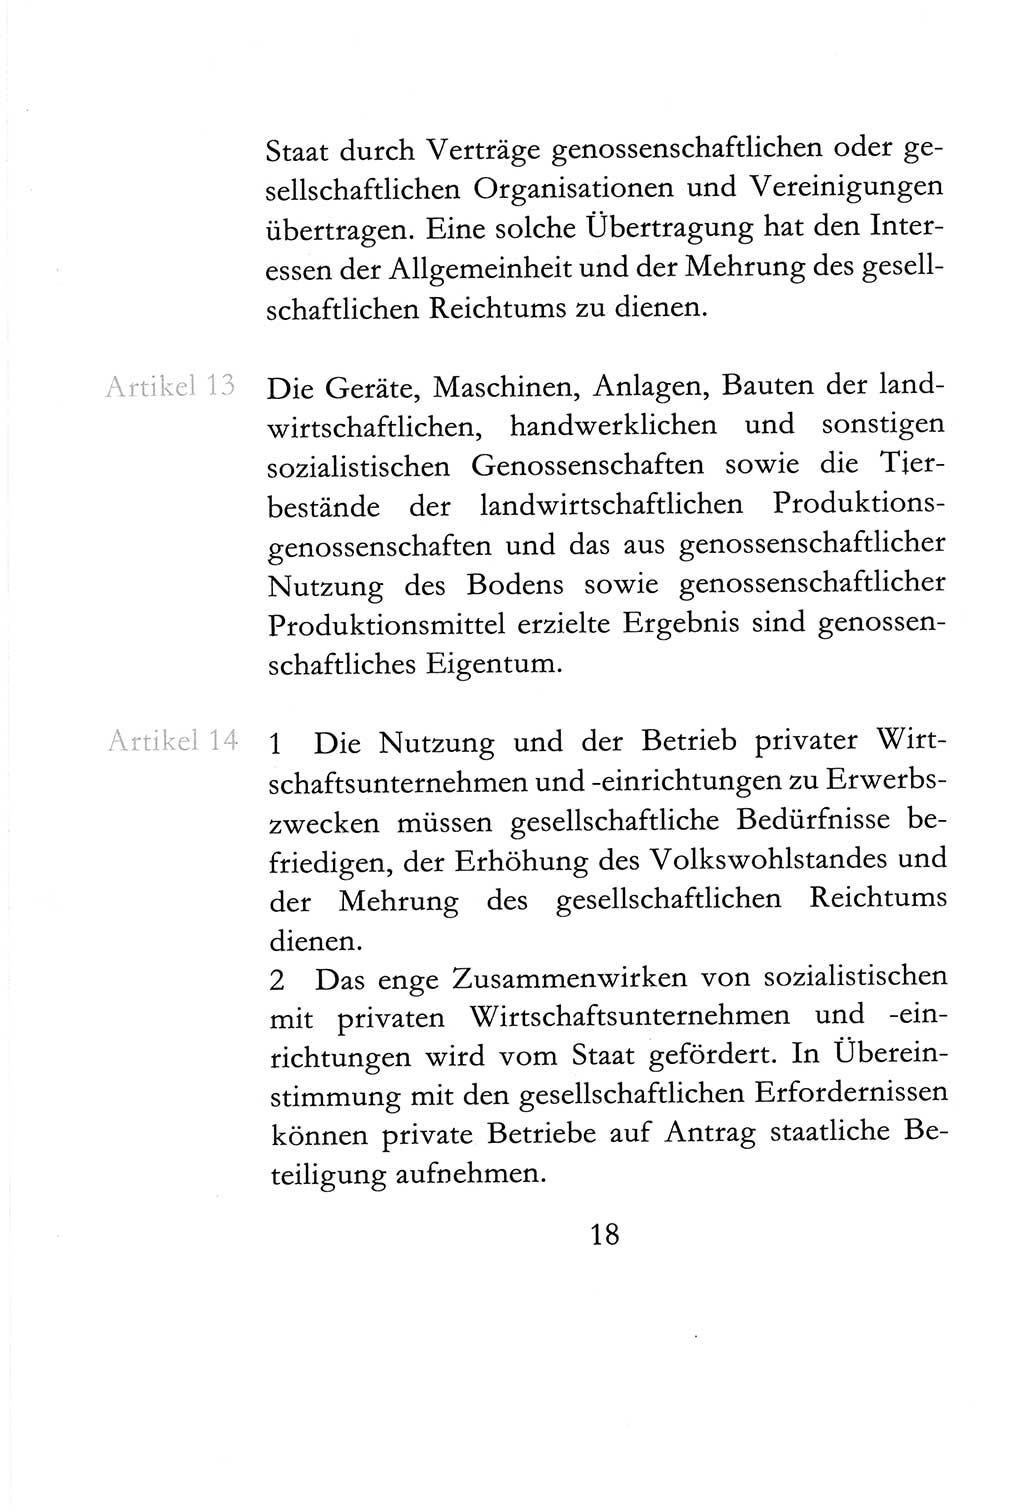 Verfassung der Deutschen Demokratischen Republik (DDR) vom 6. April 1968, Seite 18 (Verf. DDR 1968, S. 18)